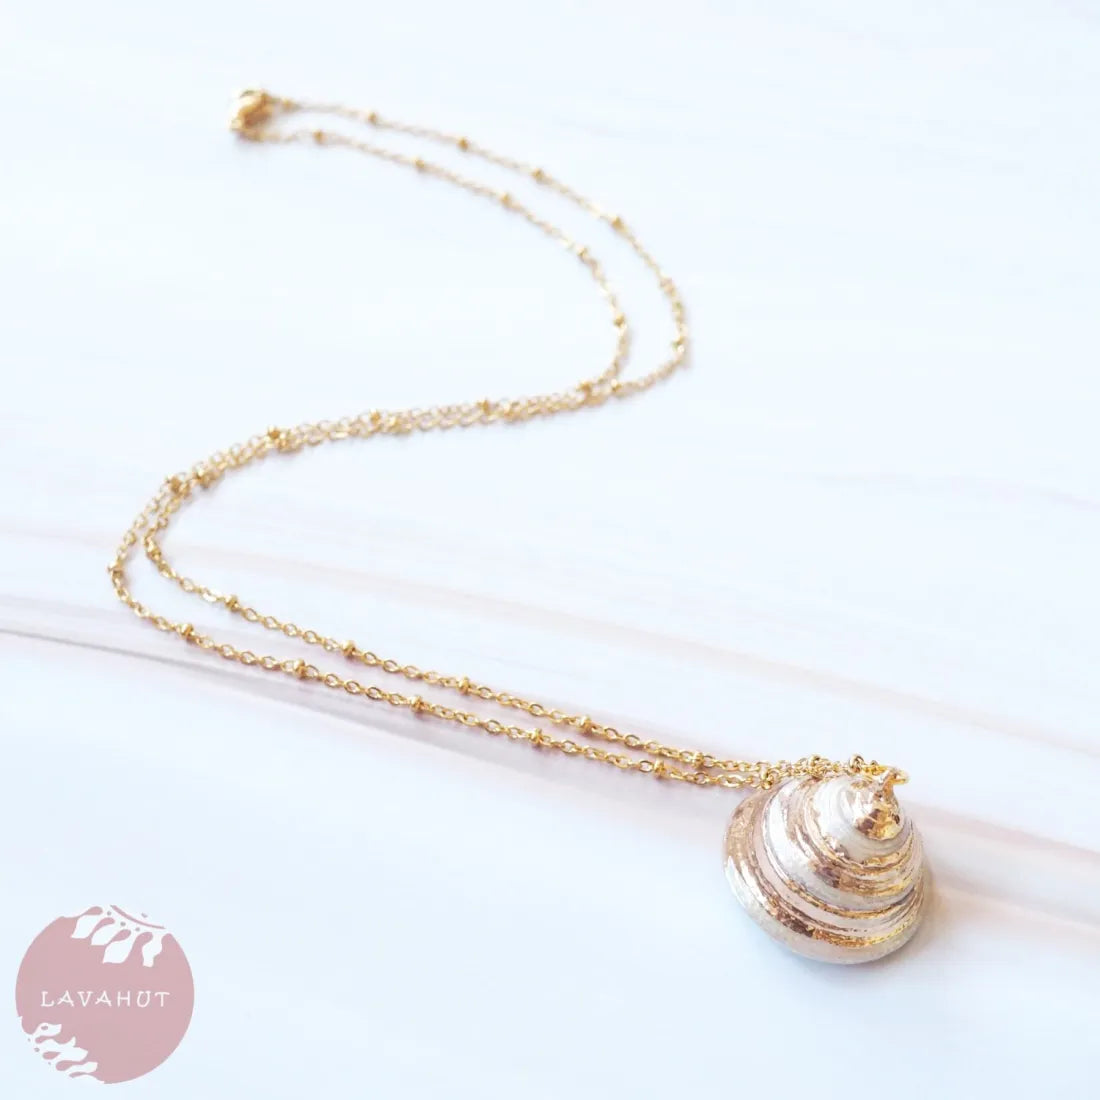 Pearl Trochus Seashell Hawaiian Pendant Necklace - Made In Hawaii